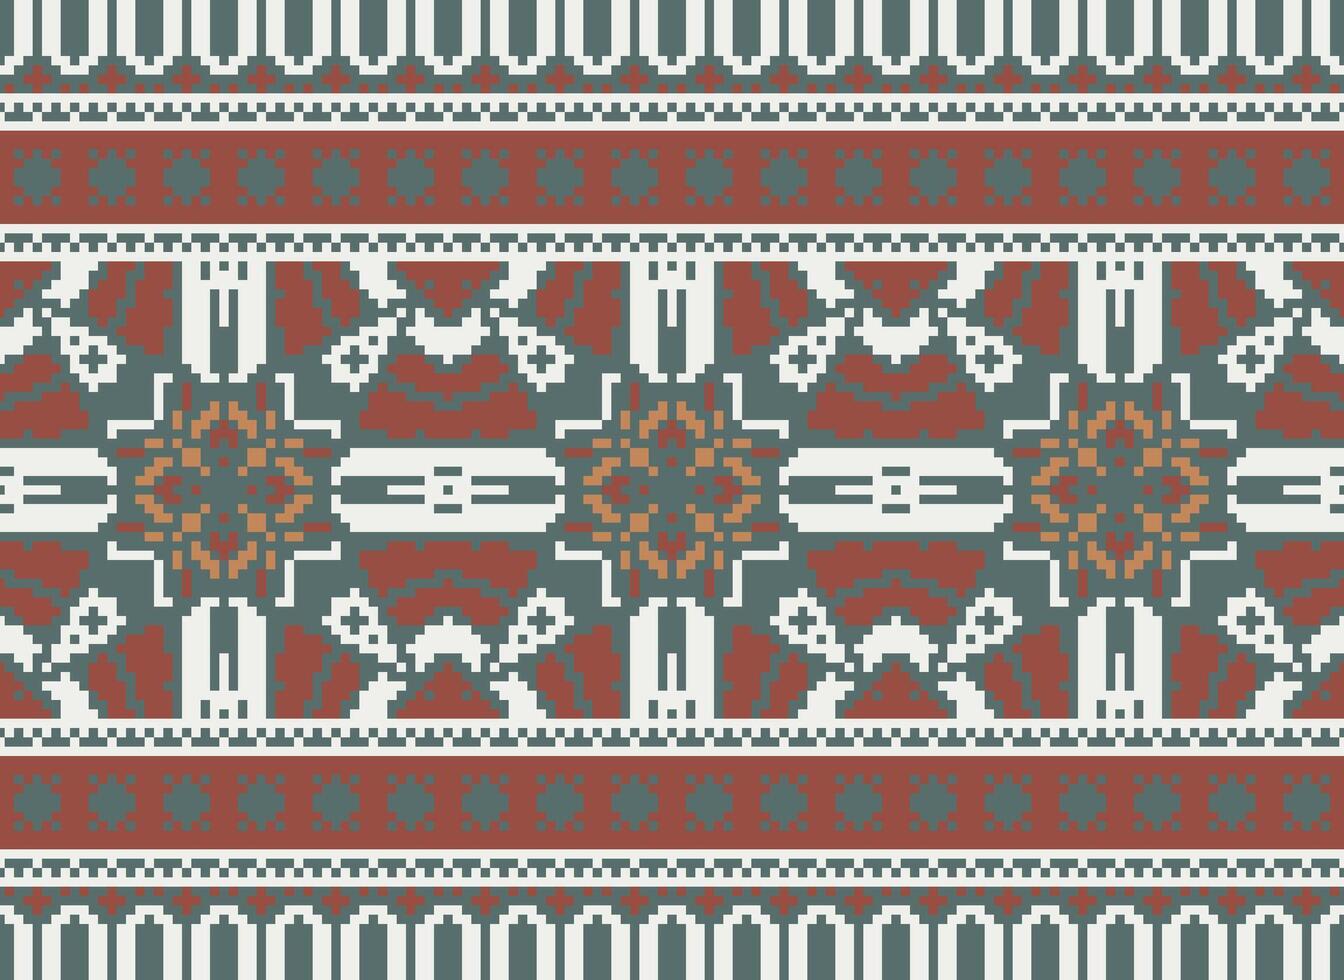 americano étnico nativo patrón.tradicional Navajo,azteca,apache,suroeste y mexicano estilo tela patrón.abstracto motivos patrón de diseño para tela, ropa, manta, alfombra, tejido, envoltura, decoración vector